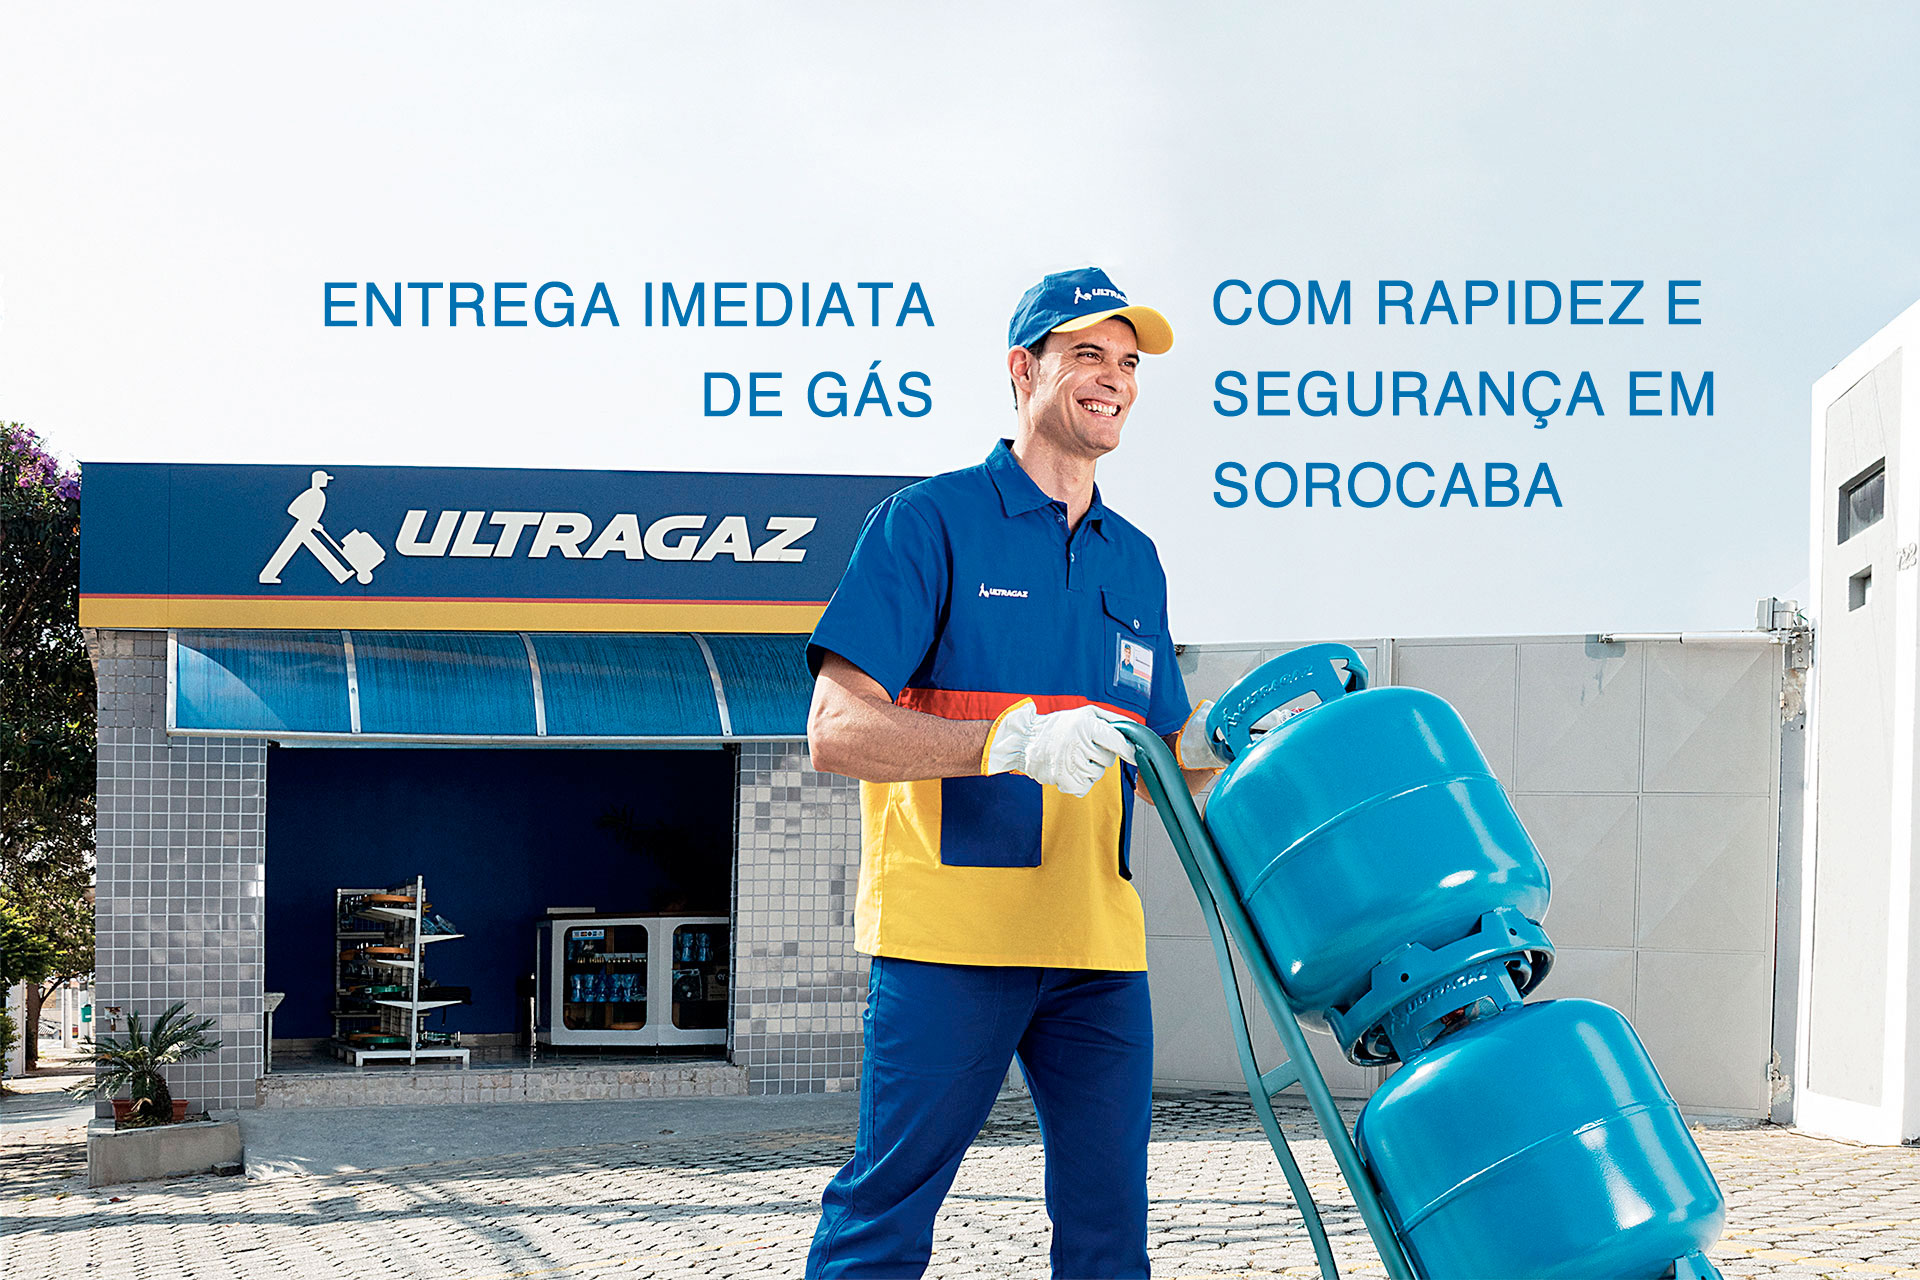 Eligás Ultragaz - Distribuidora de gás em Sorocaba - Contato (15) 3333-2110